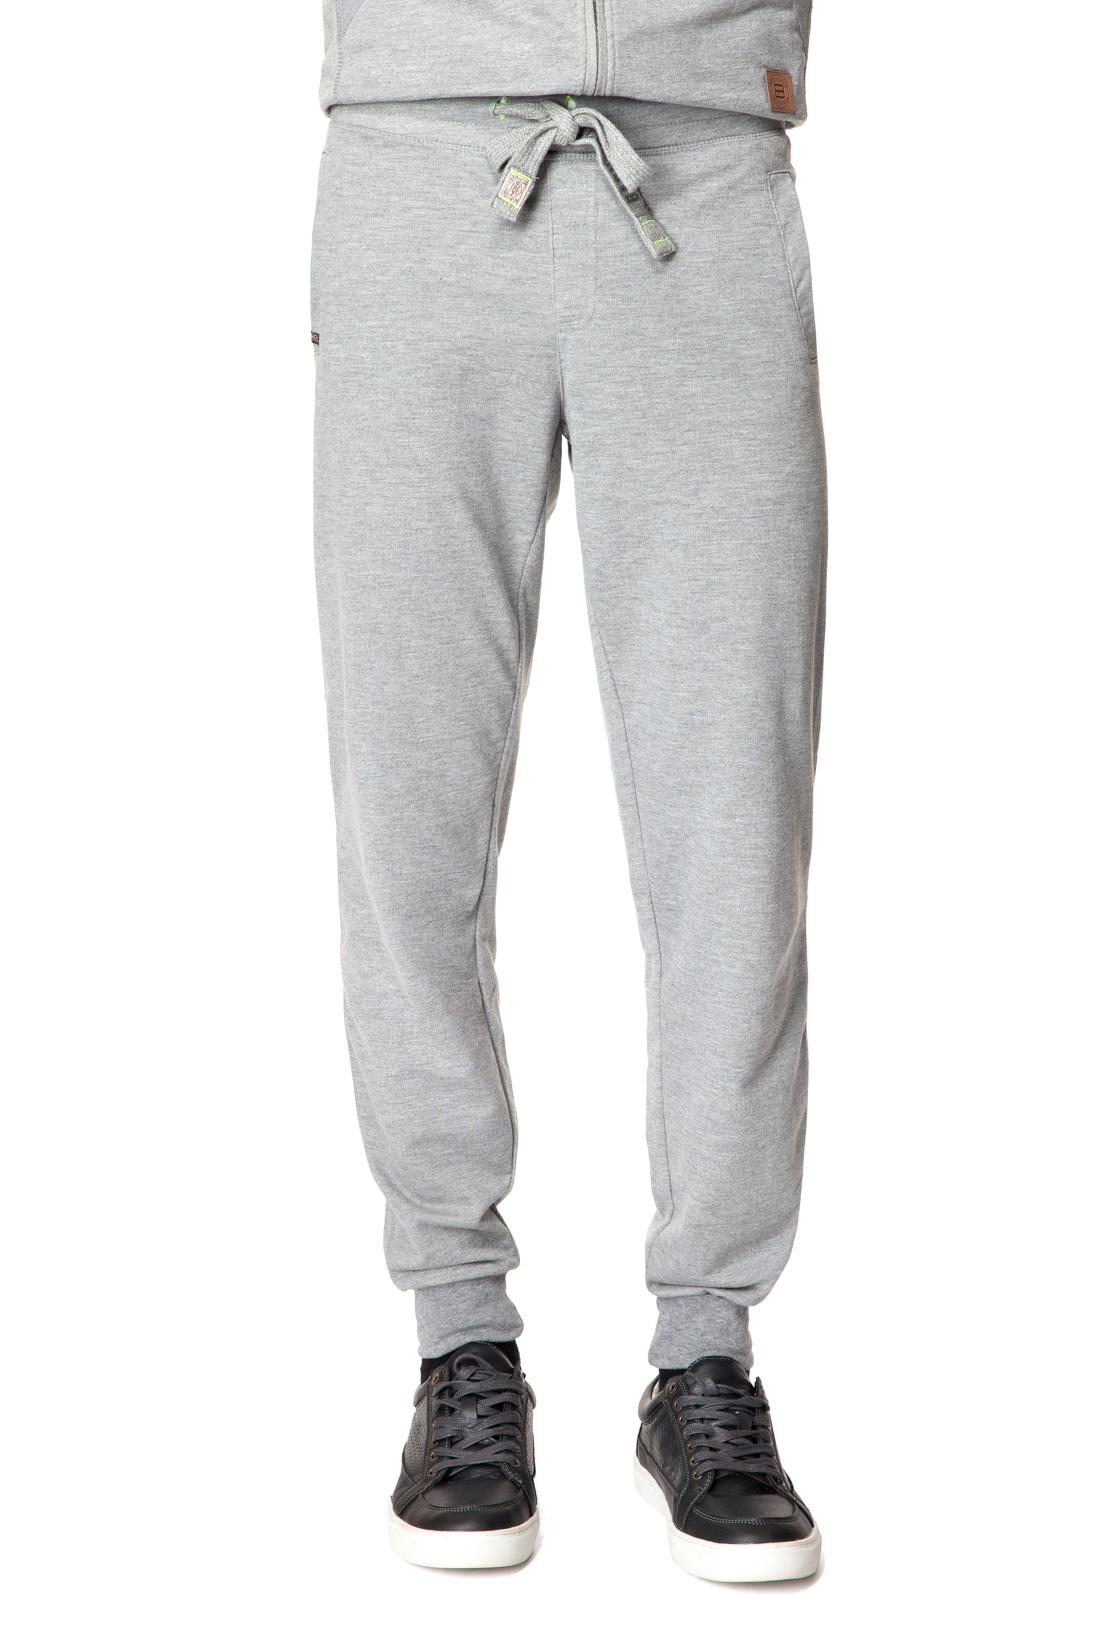 Спортивные брюки с манжетами (арт. baon B797301), размер XL, цвет cold grey melange#серый Спортивные брюки с манжетами (арт. baon B797301) - фото 1